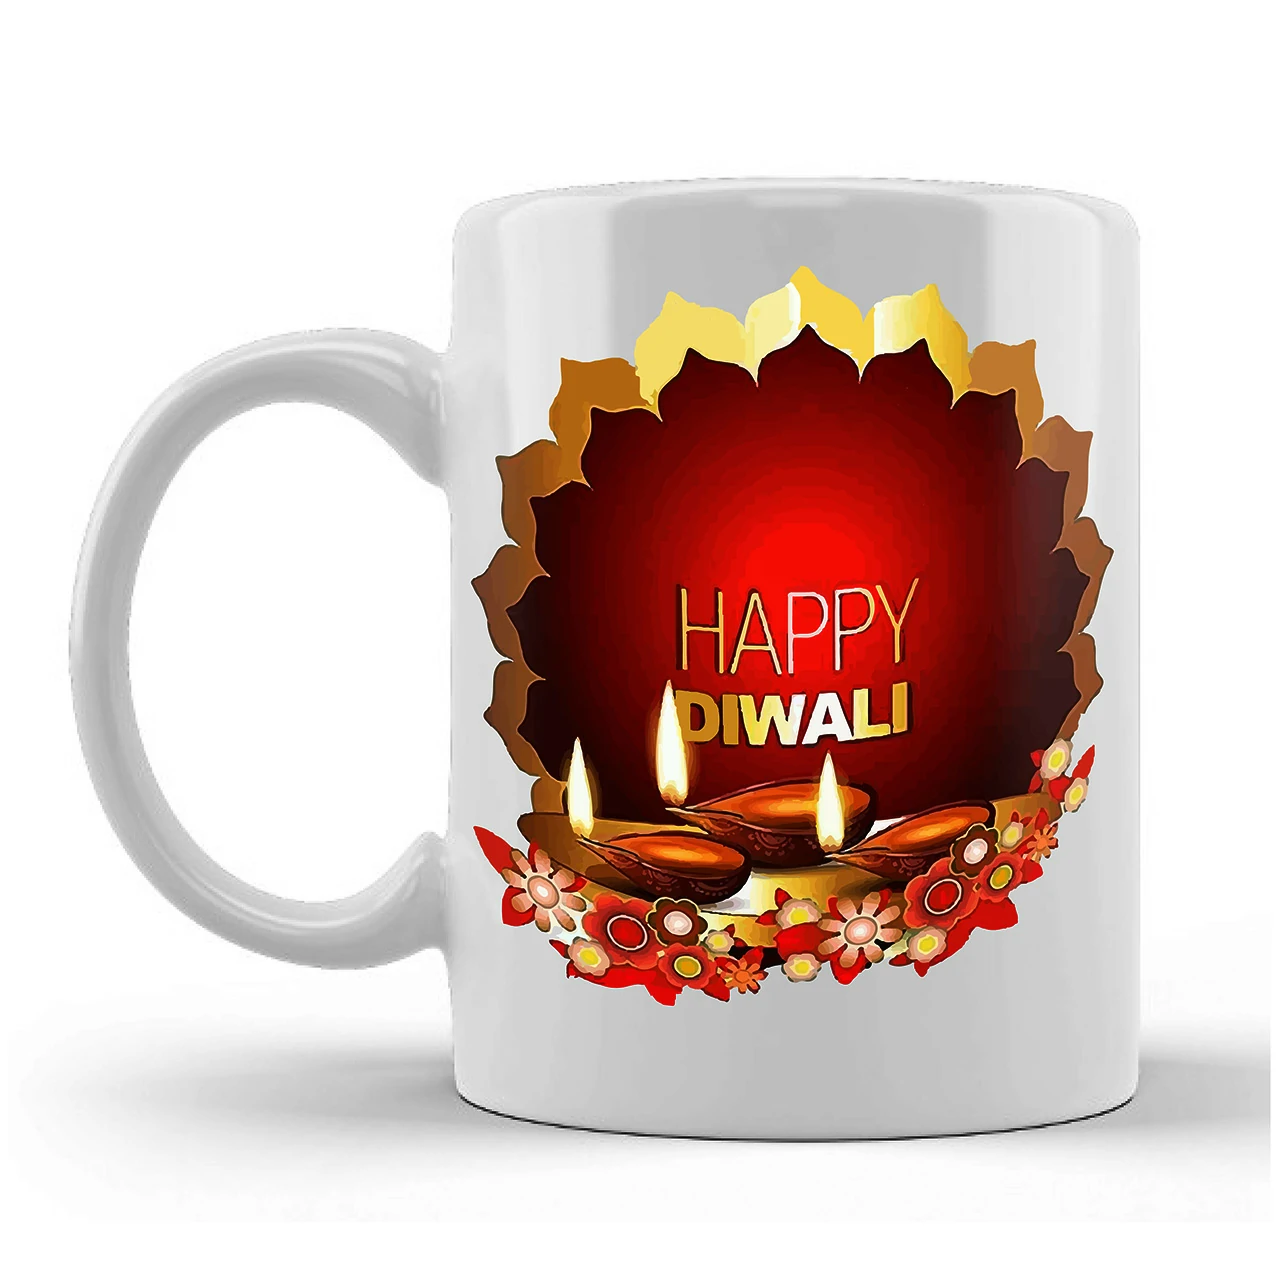 Happy Diwali Printed Ceramic Mug Gifts for | Diwali Gifts, Diwali Gift Items, Diwali Gifts for Friends, Diwali Gifts for Friends and Family, Gifts for Diwali (Design 6)